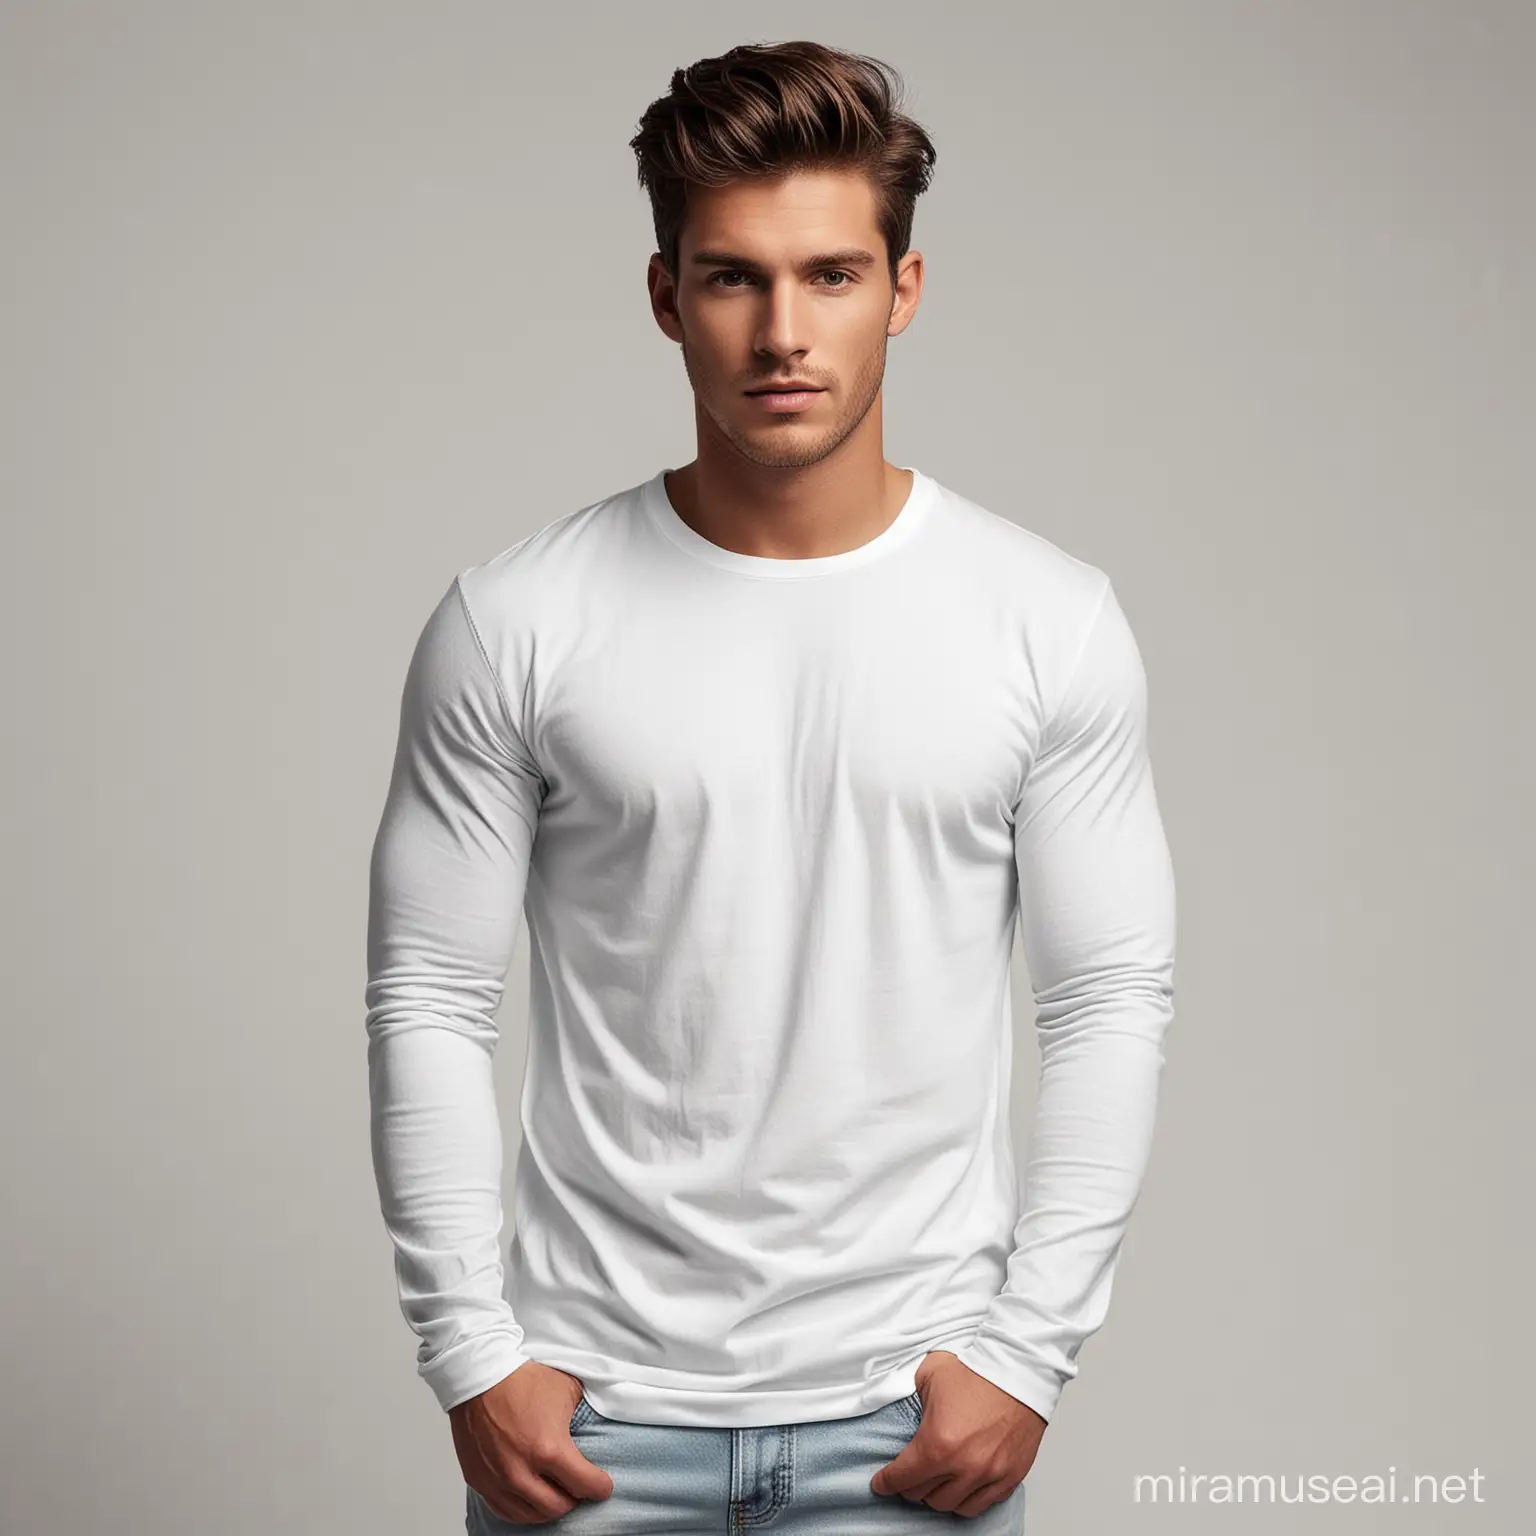 FullView Male Model in White Long Sleeve Shirt